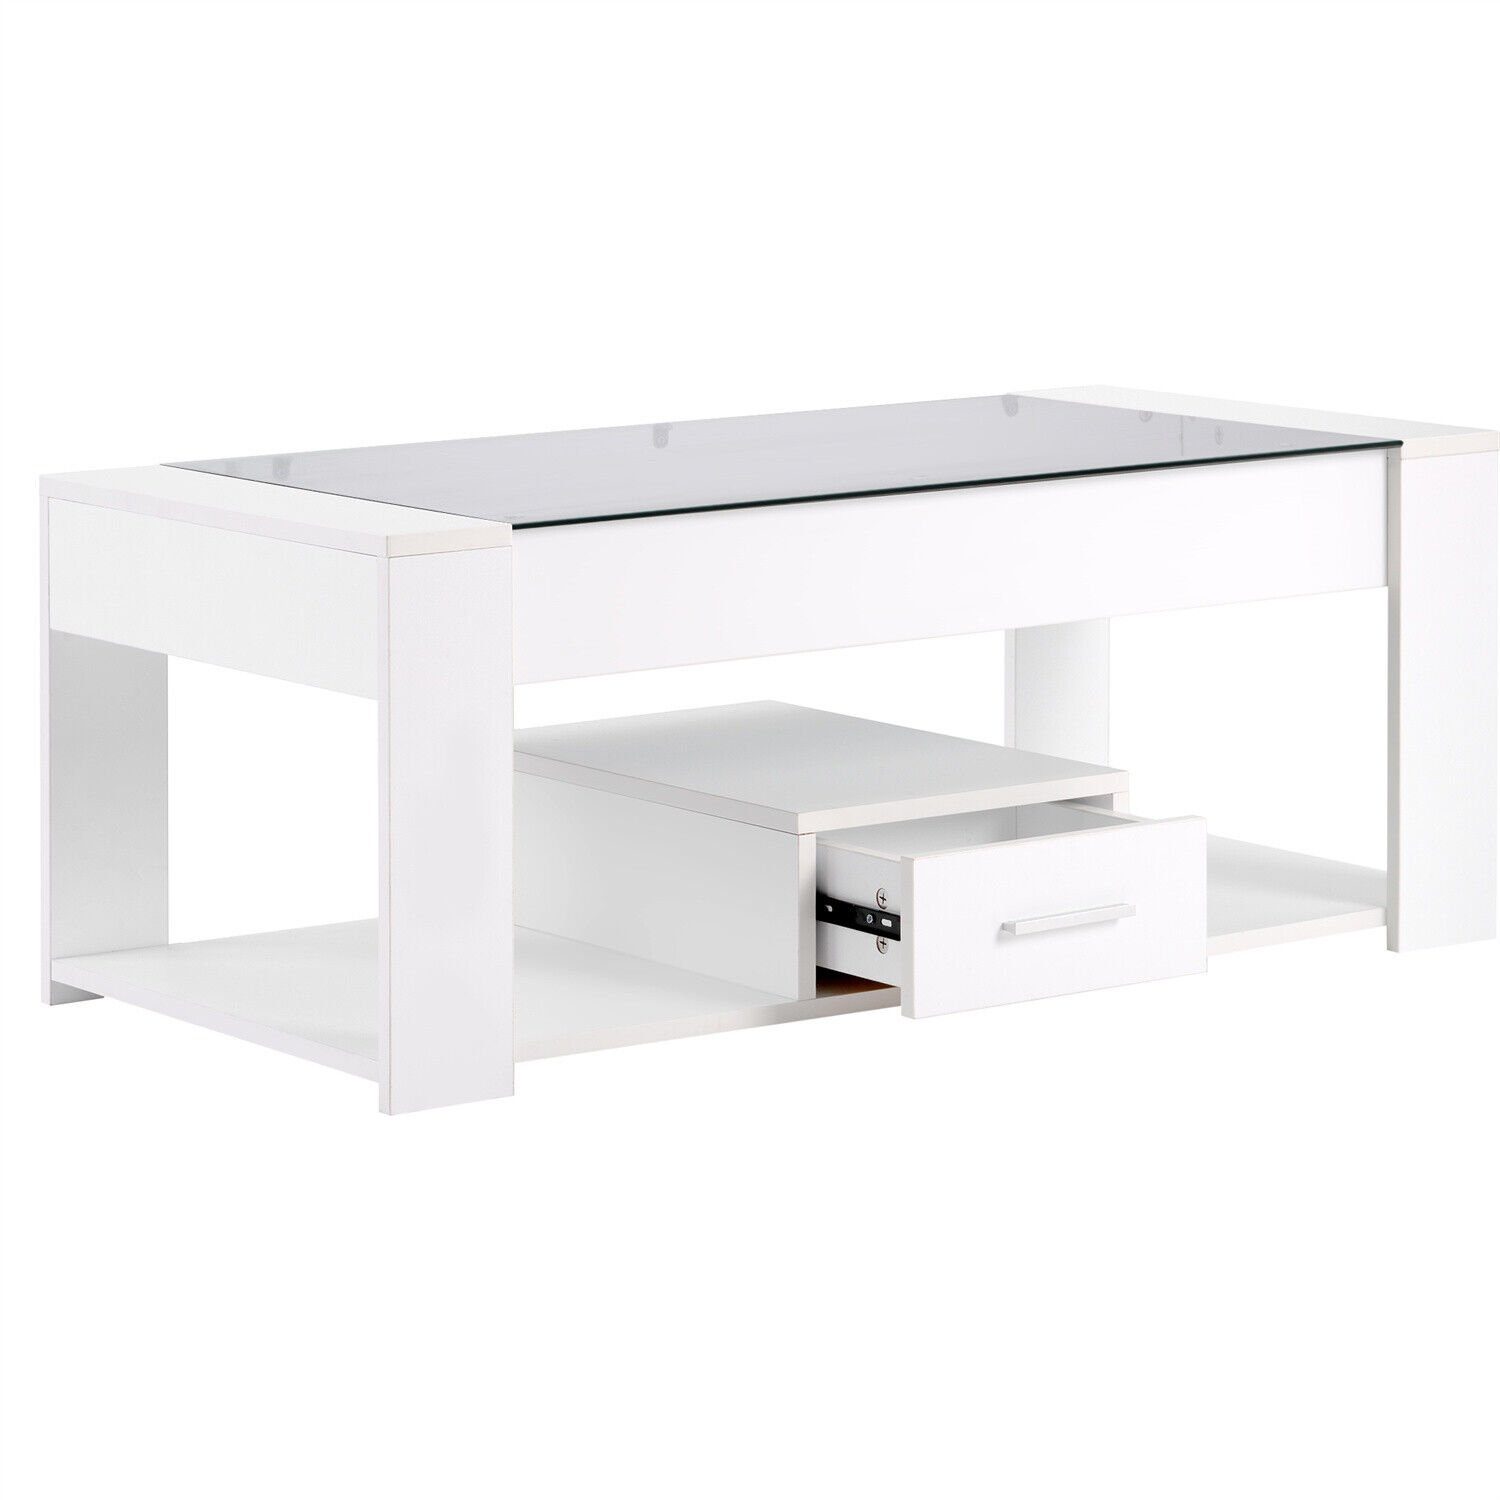 DOTMALL Glasplatte Weiß Wohnzimmer Stauraum Tischsitz Couchtisch mit